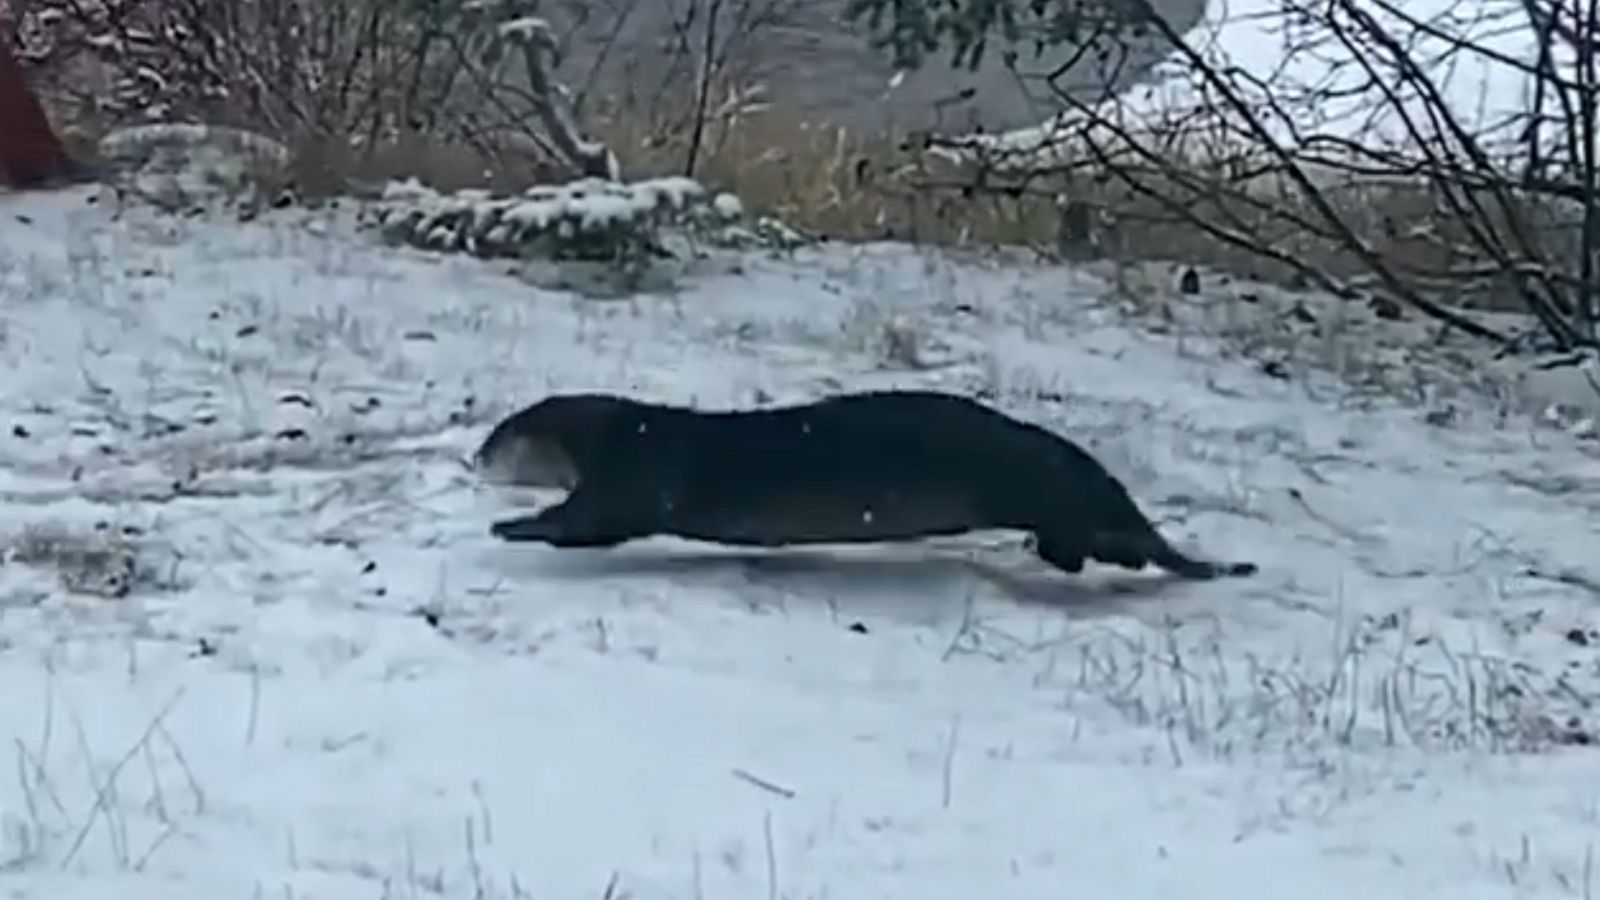 Otter frolics in fresh snow in Minnesota - Good Morning America